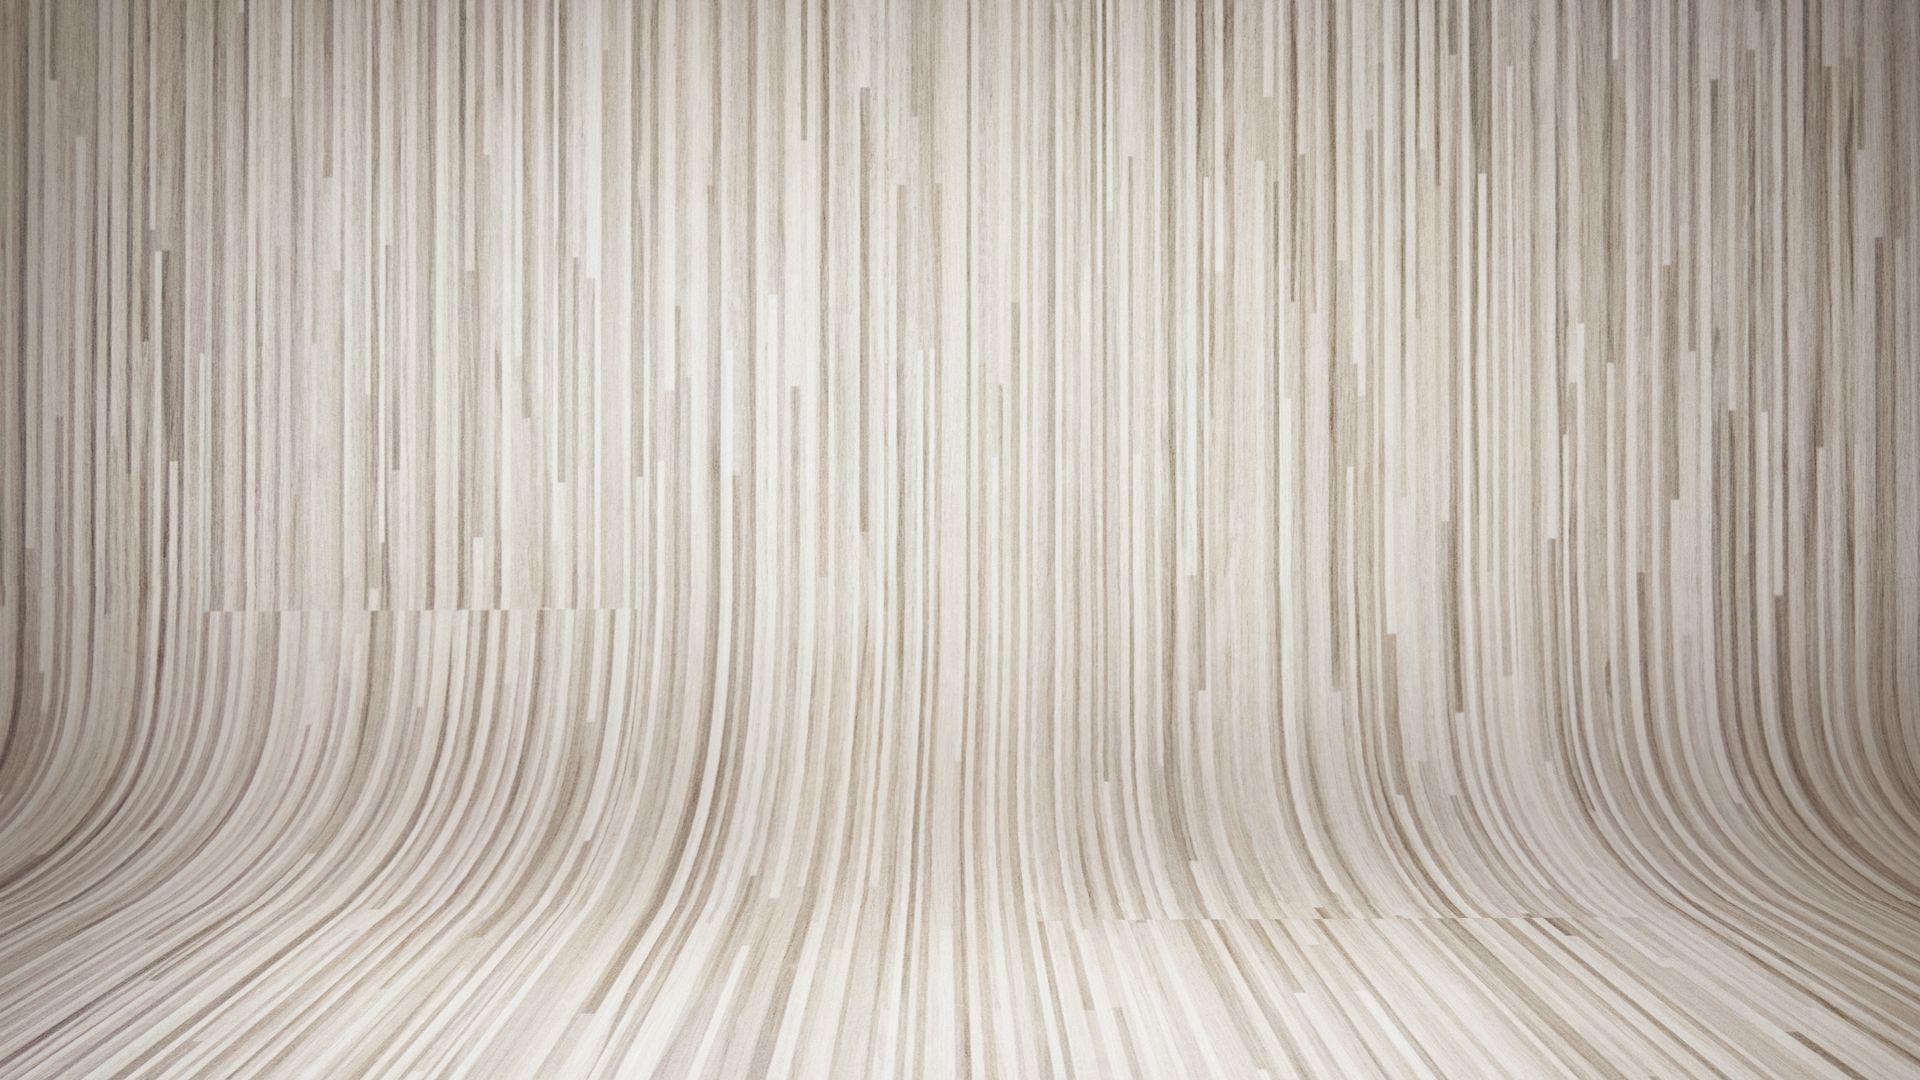 1920x1080 White Wooden Background.